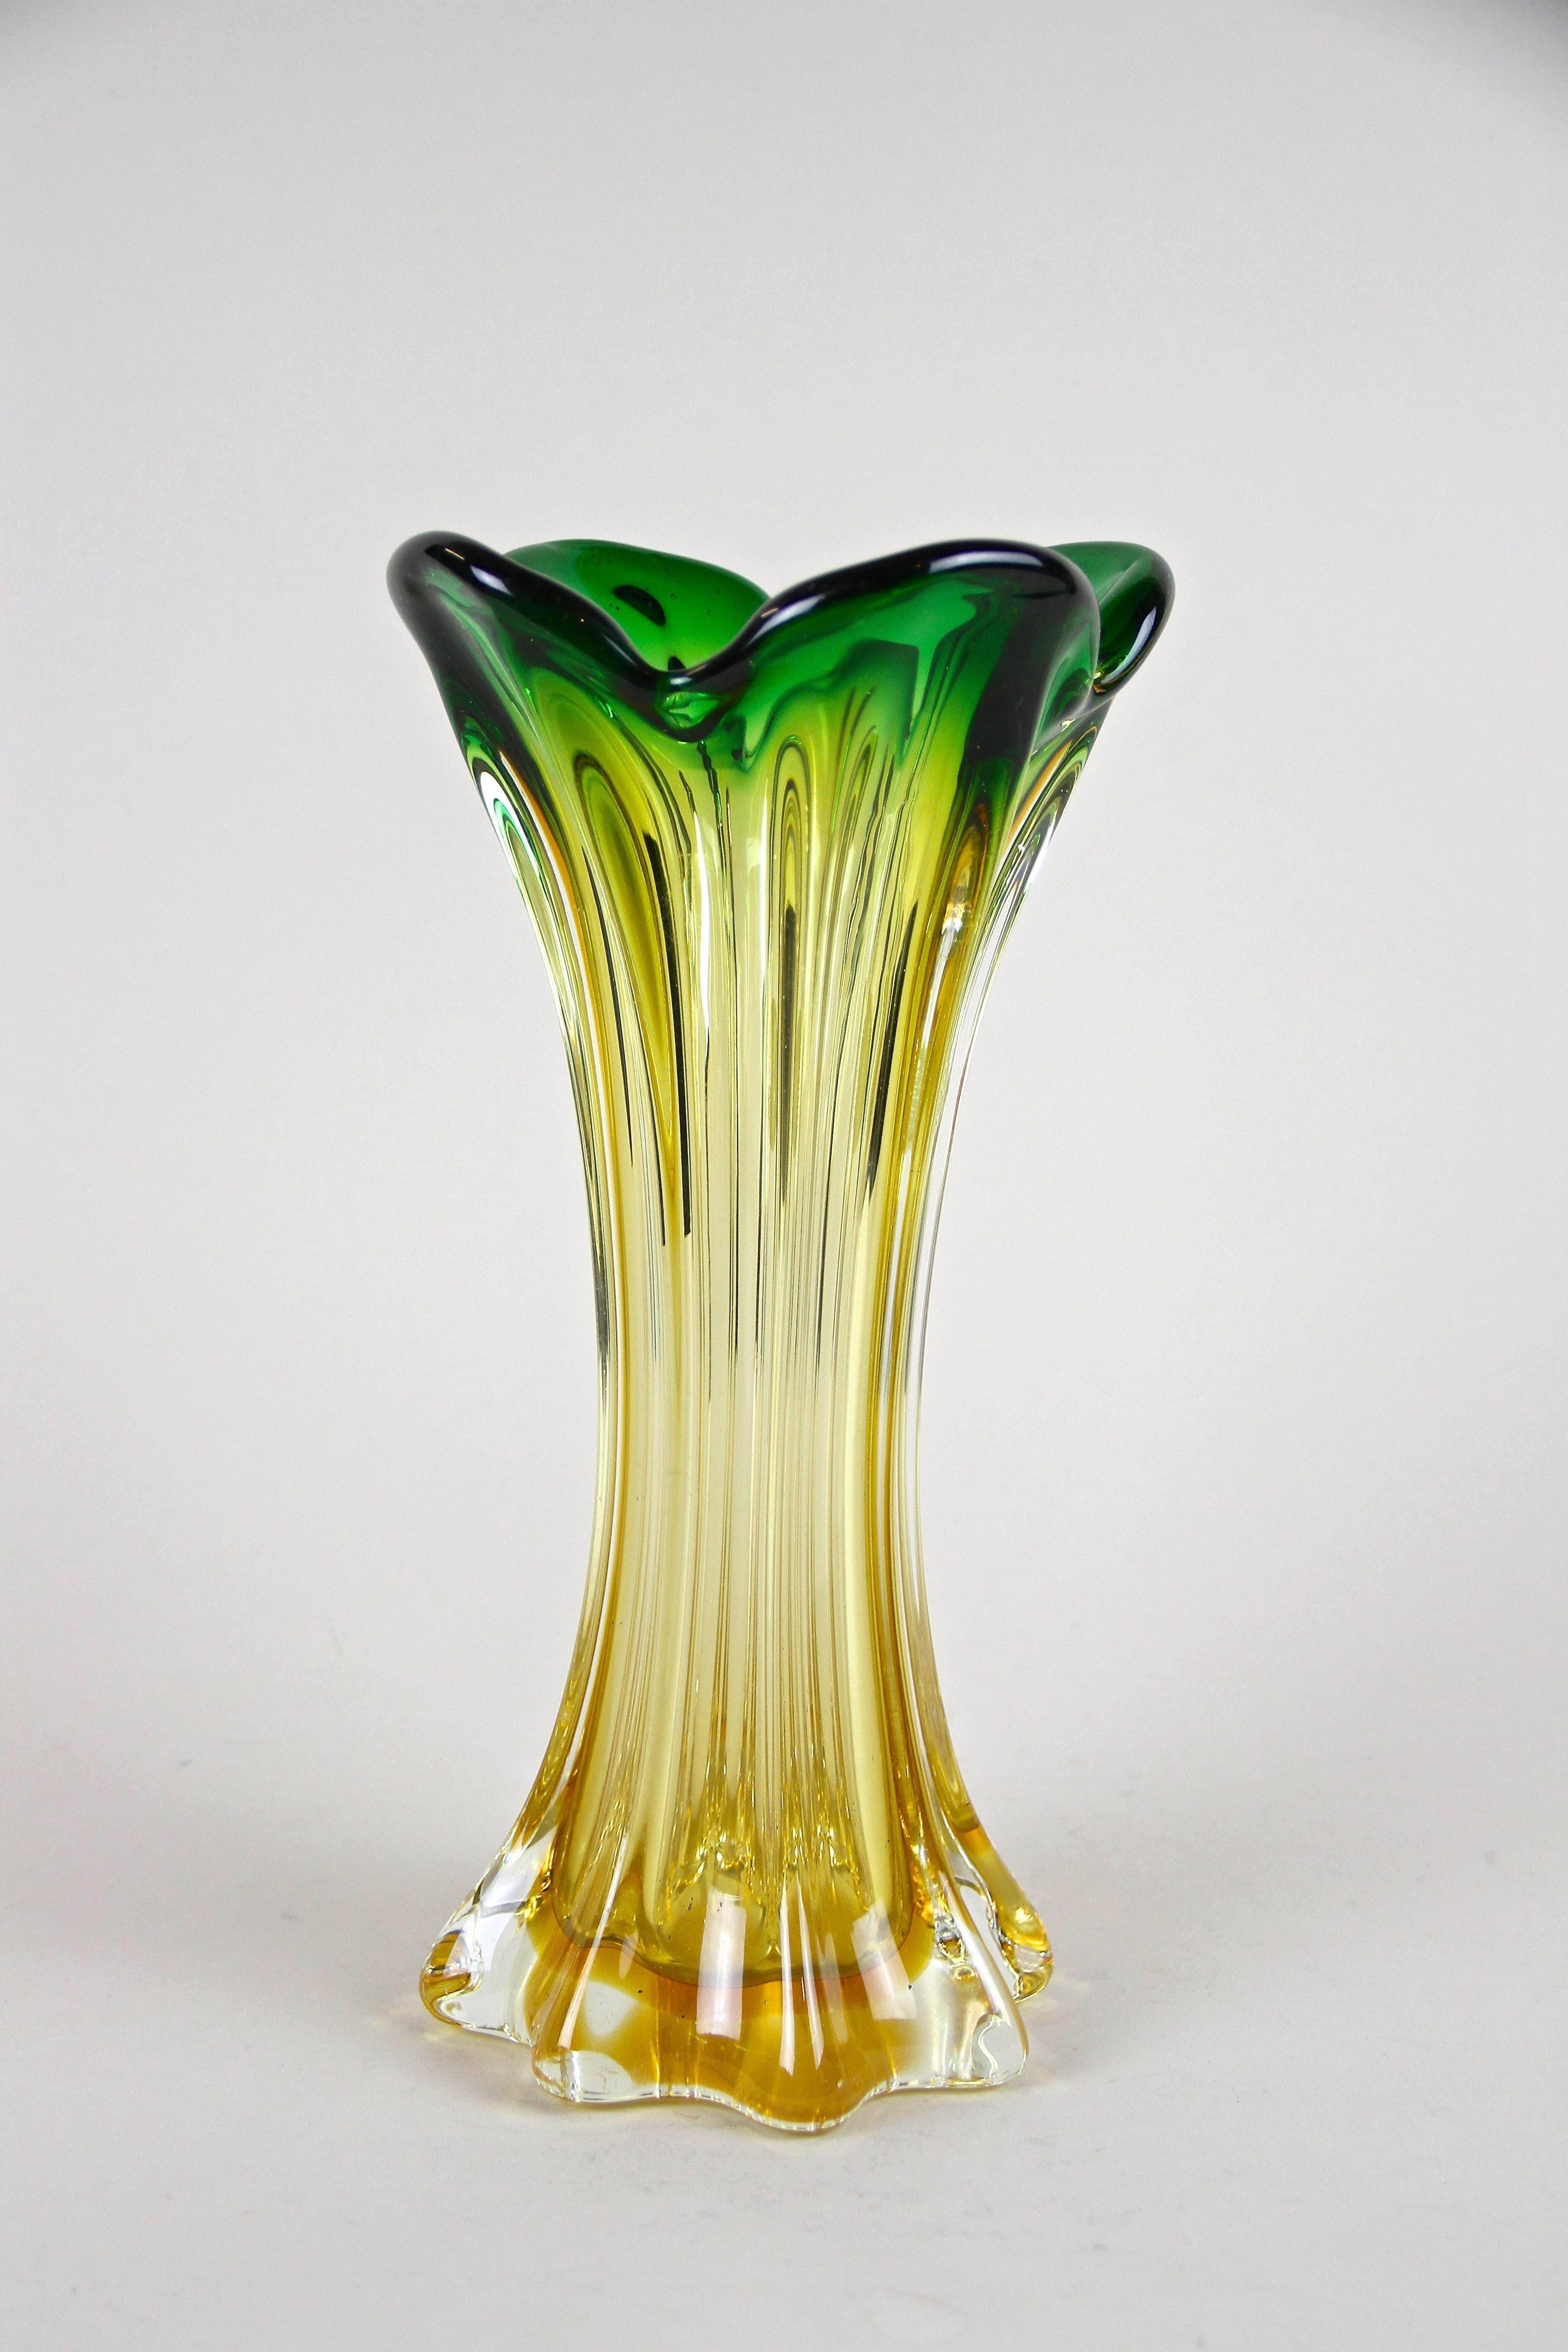 Magnifique vase en verre de Murano du milieu du siècle, provenant des célèbres ateliers d'art verrier de Sommerso, en Vénétie. Fabriqué avec art en Italie vers 1960/70, ce joli vase en verre est impressionné par une coloration étonnante allant d'un